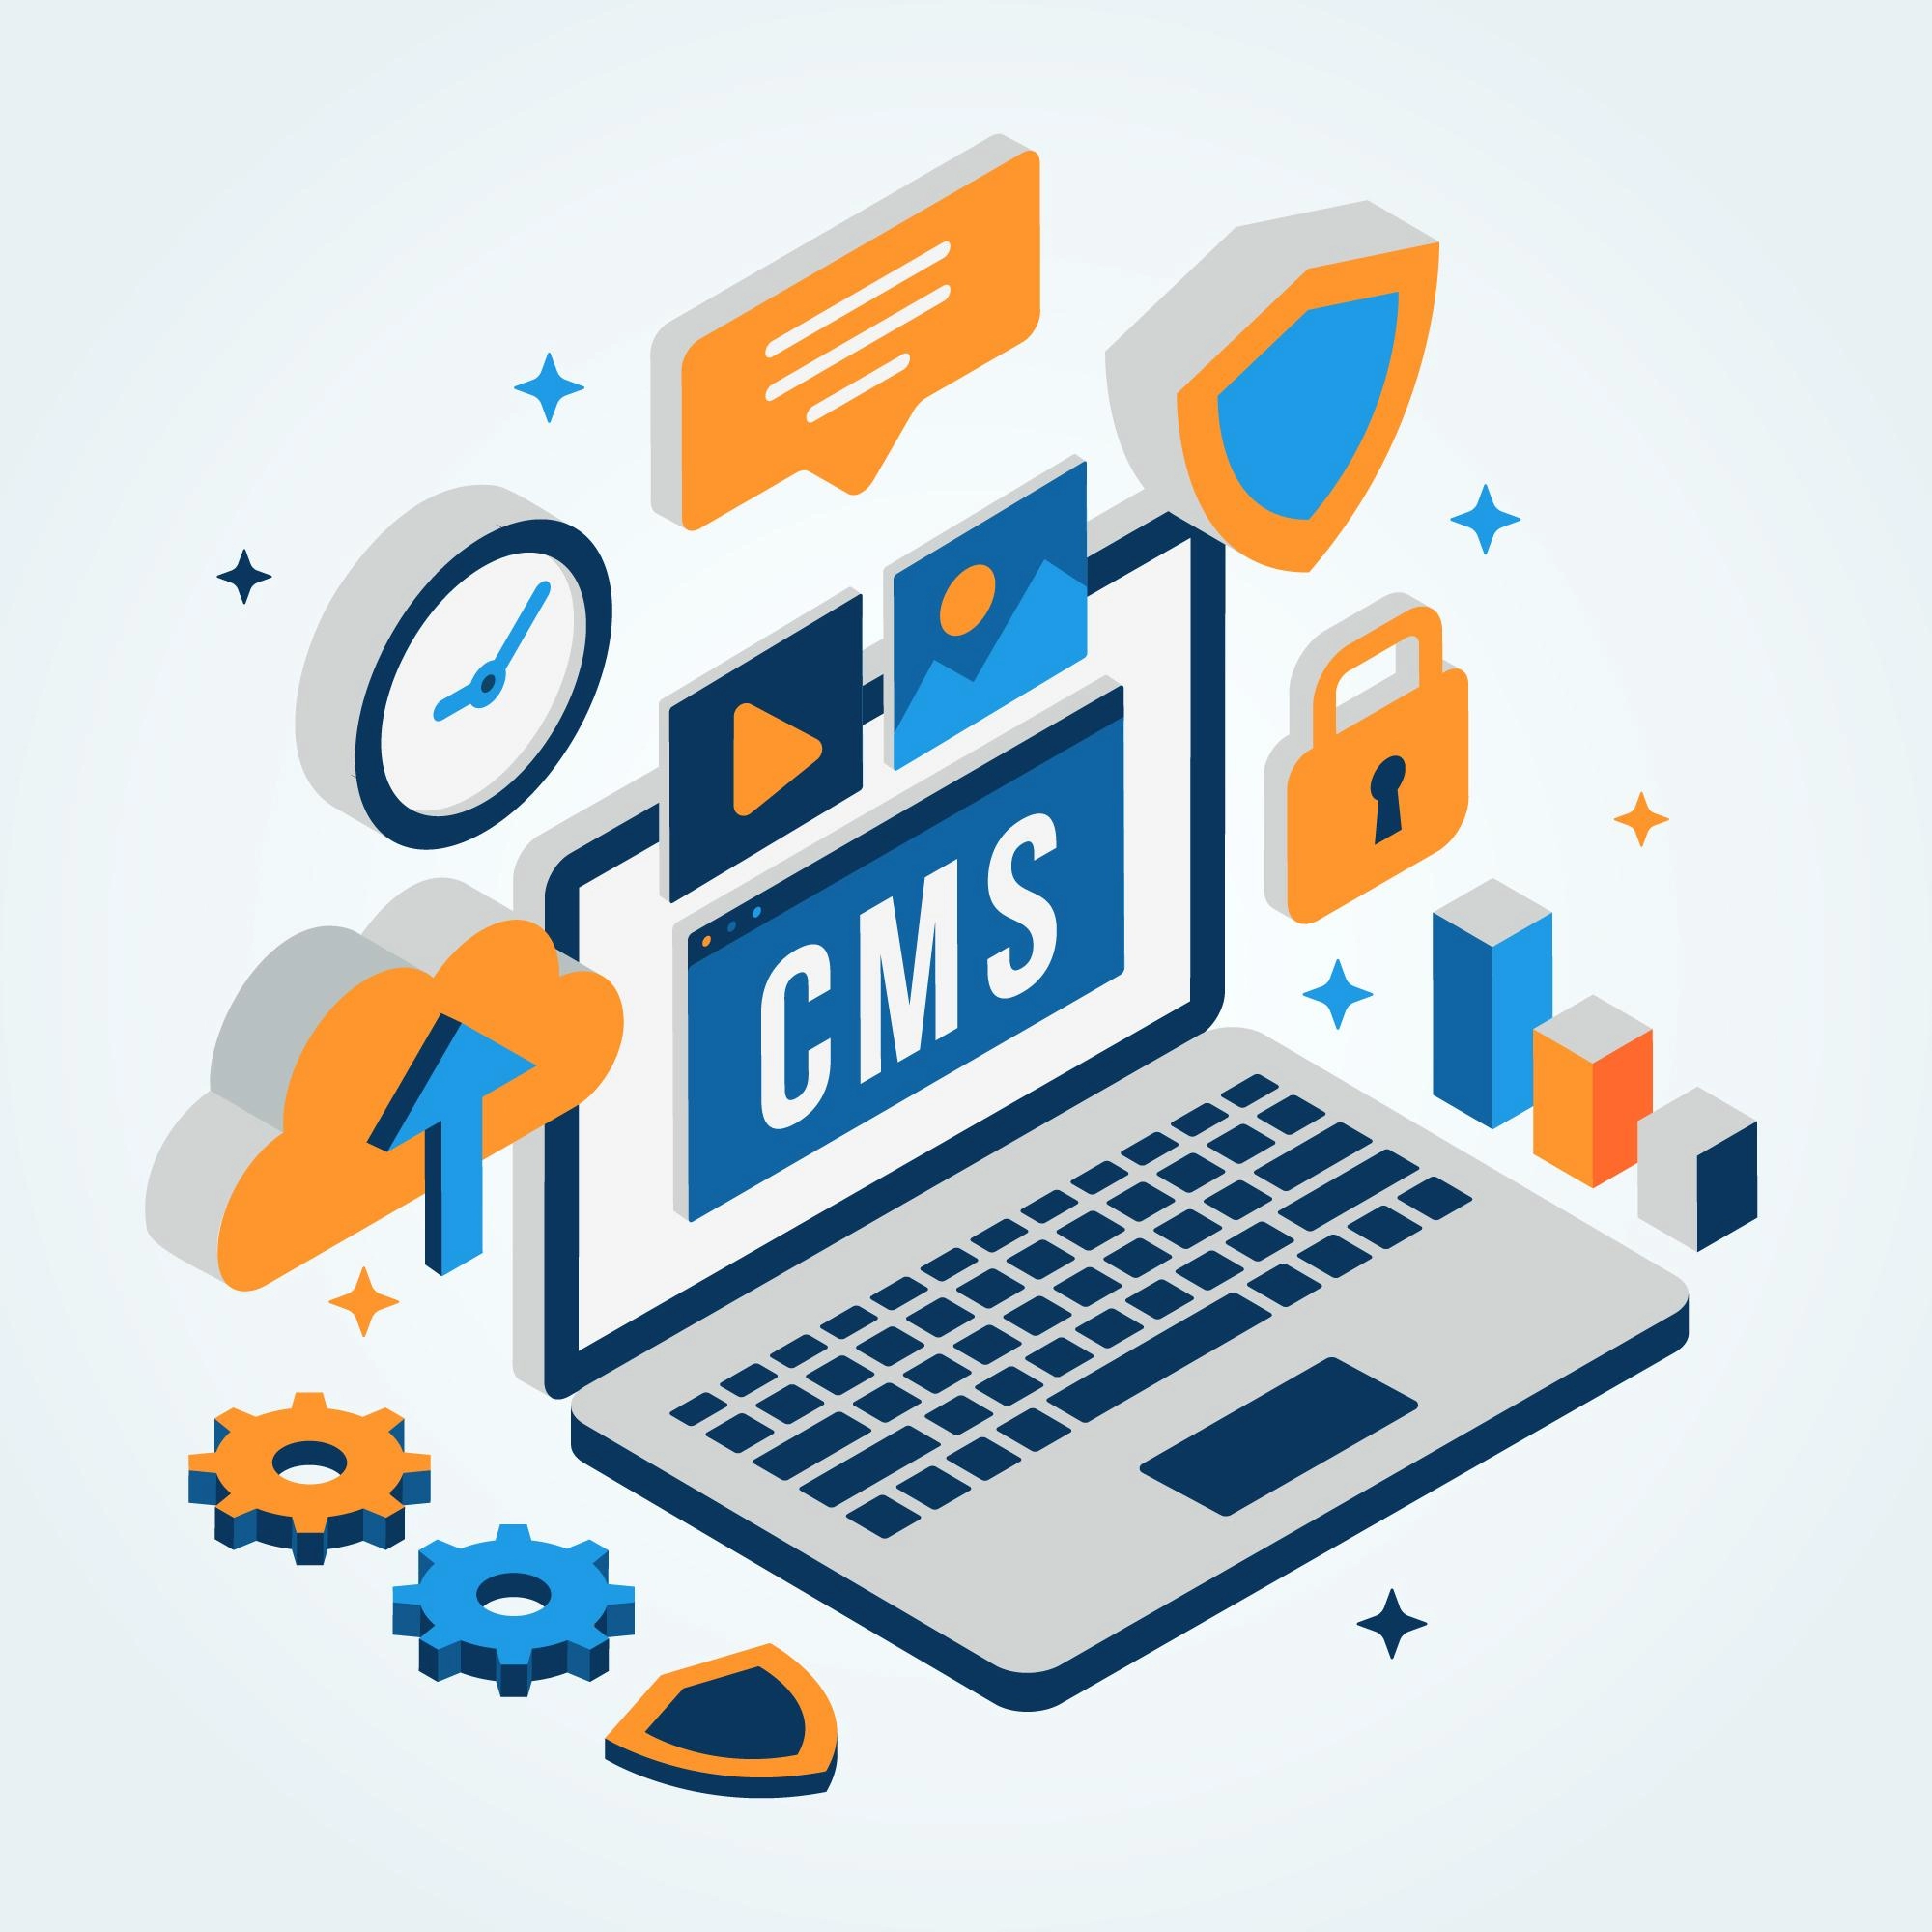 Content Management System CMS